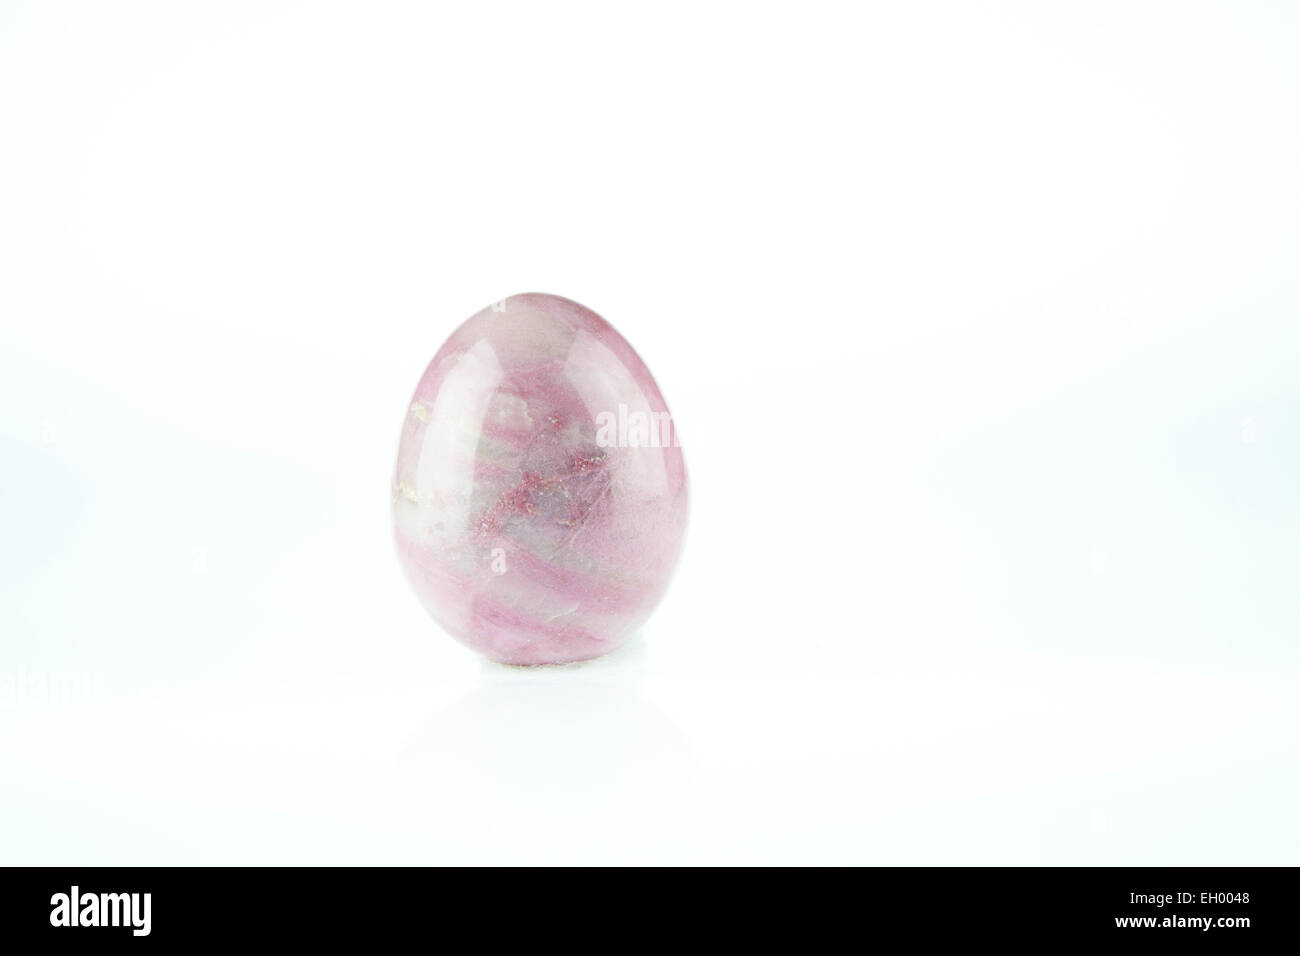 Rose Quartz egg shaped massage gemstone on white background Stock Photo -  Alamy